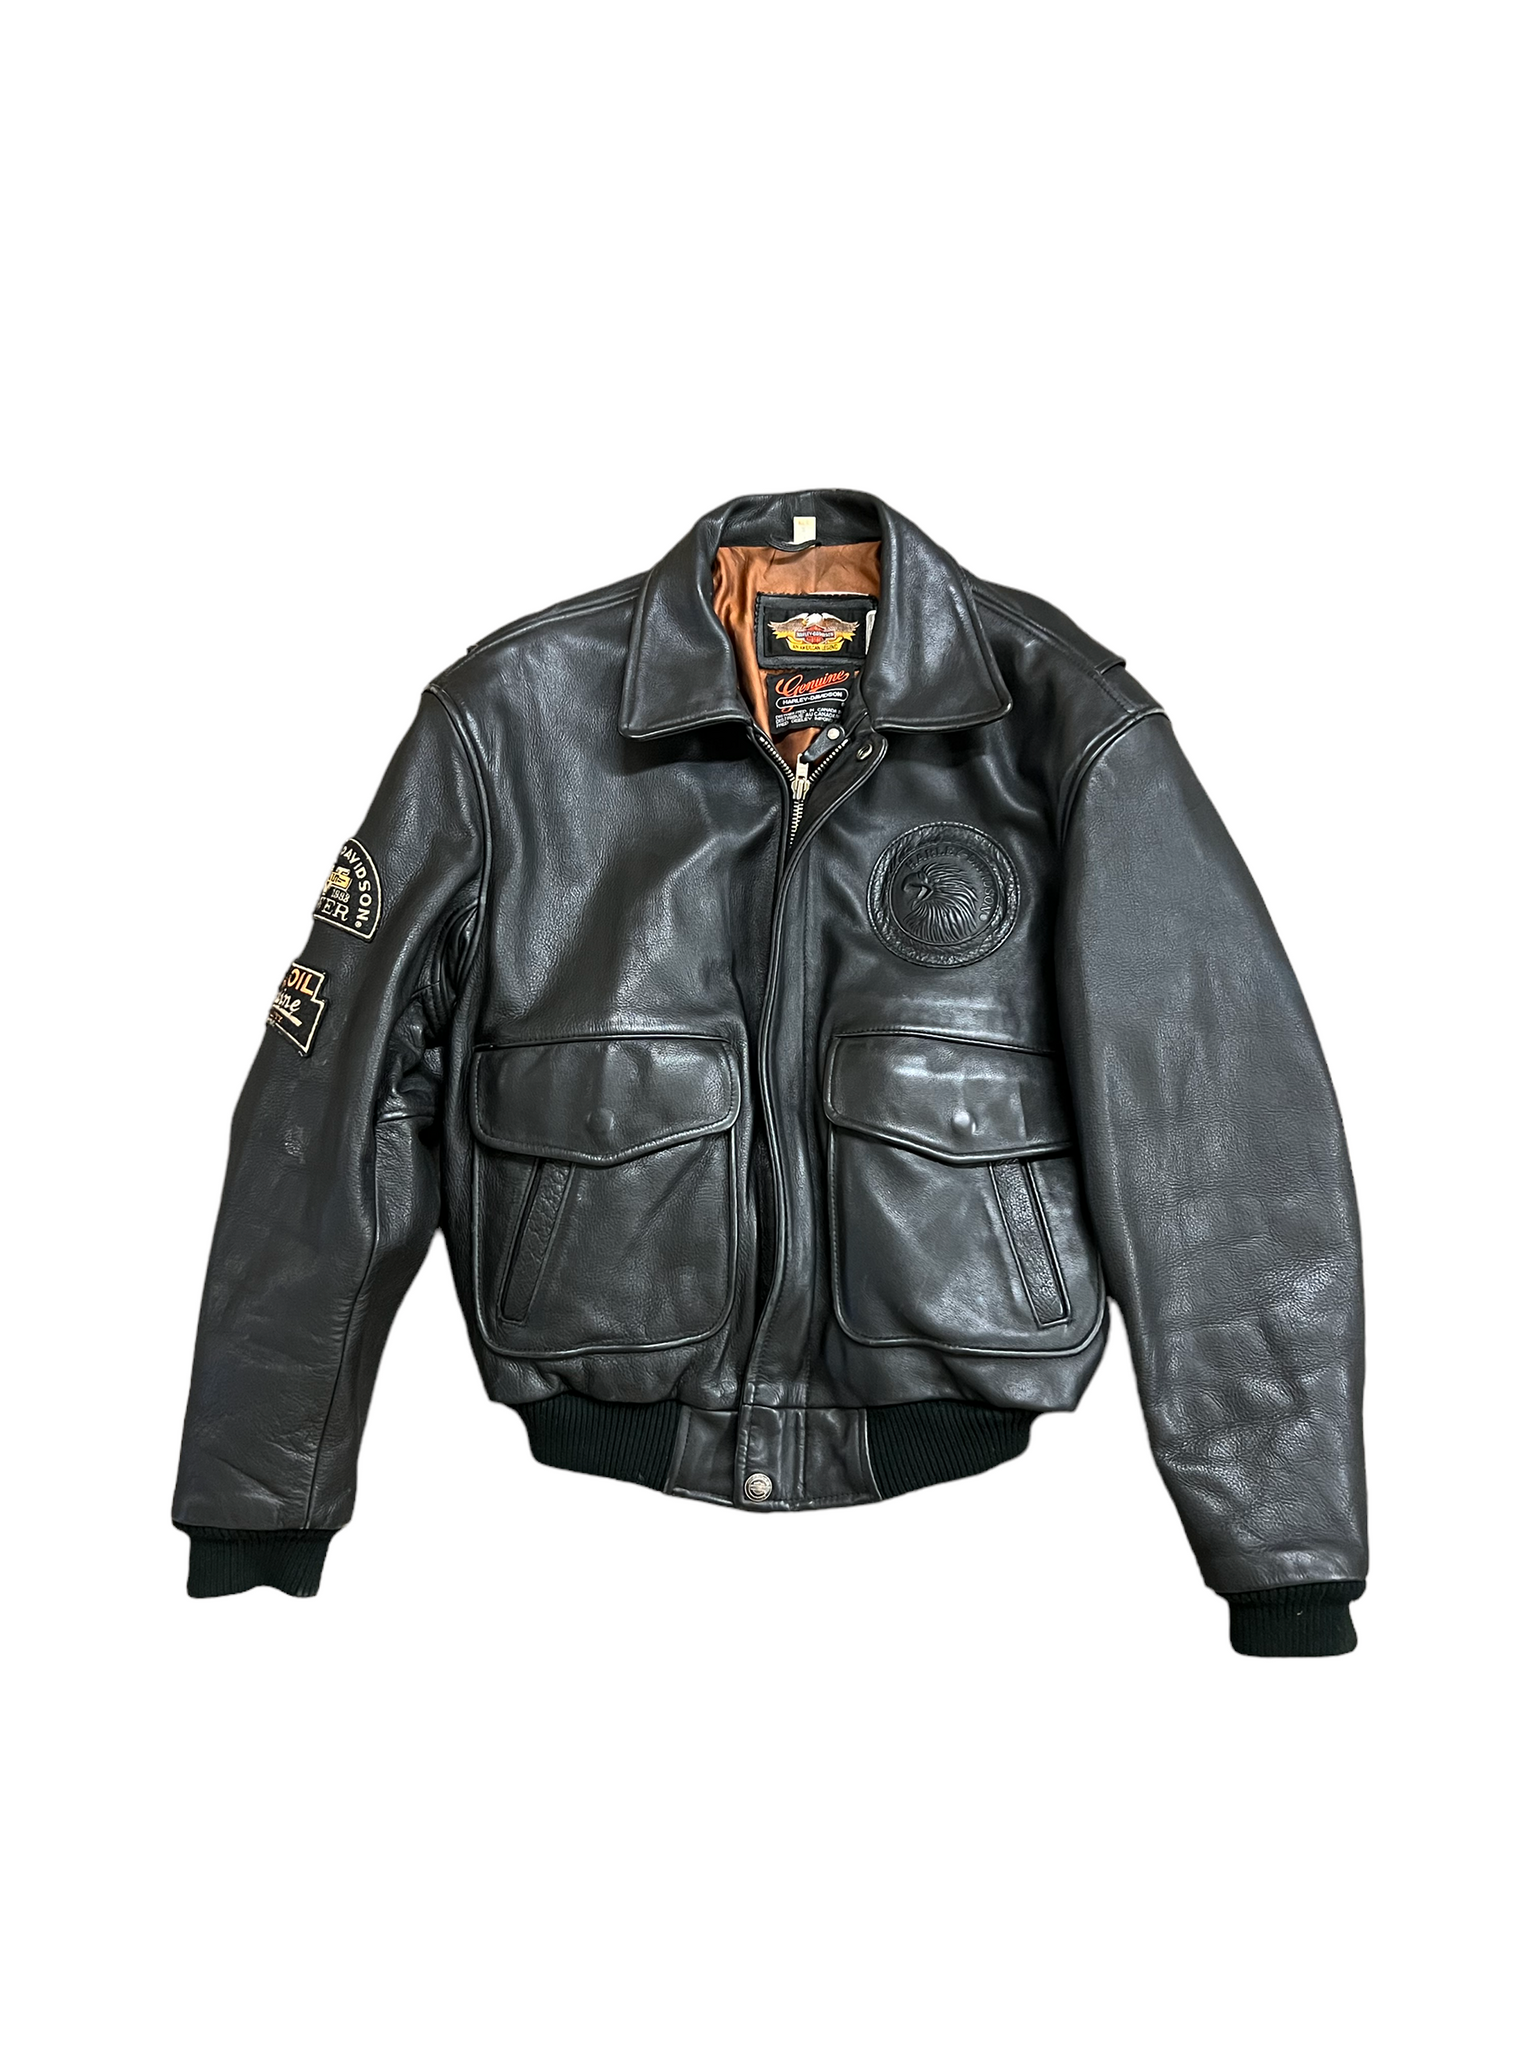 Vintage Harley Leather Biker Jacket